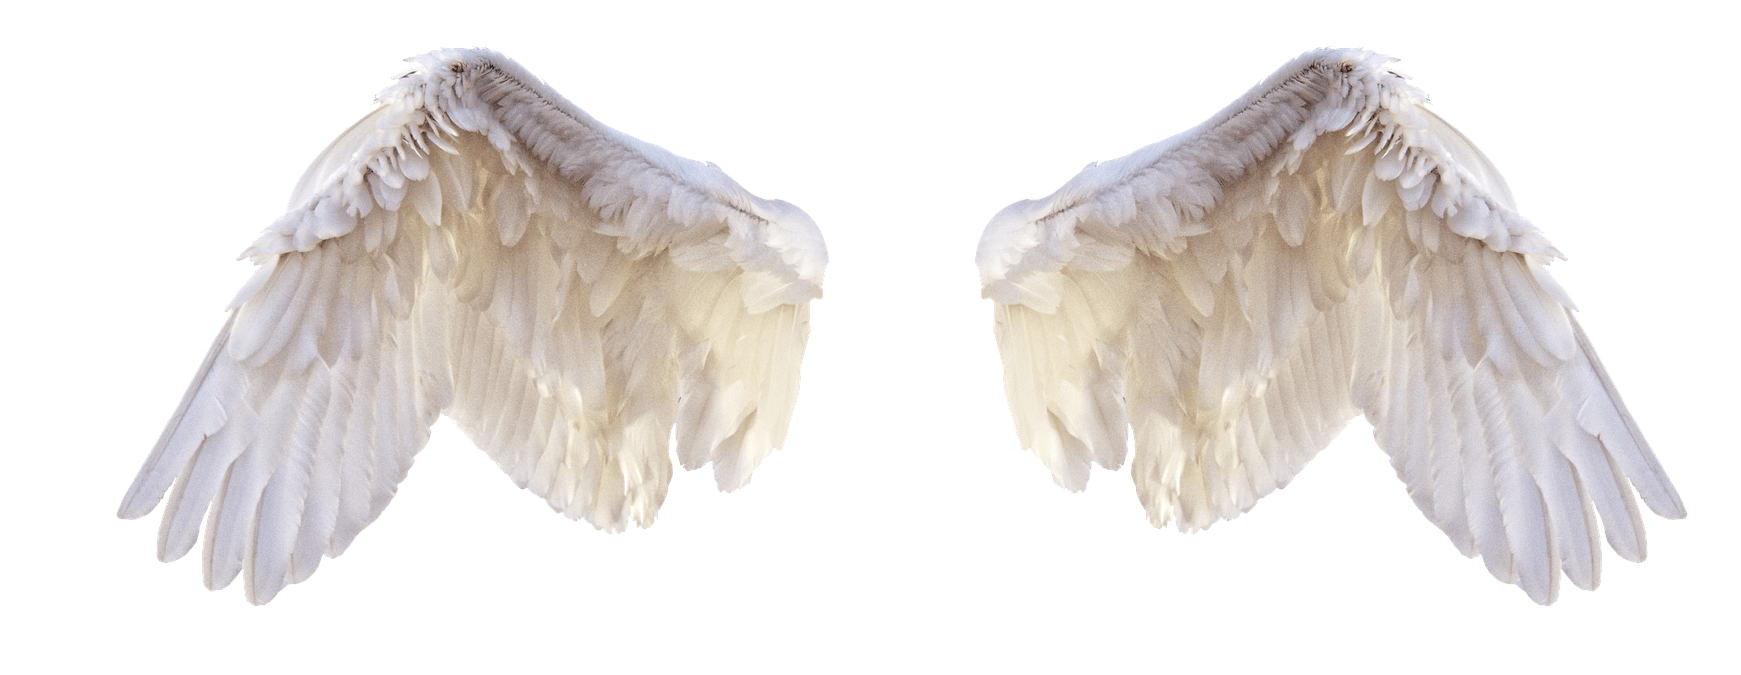 Гусиные Крылья на белом фоне